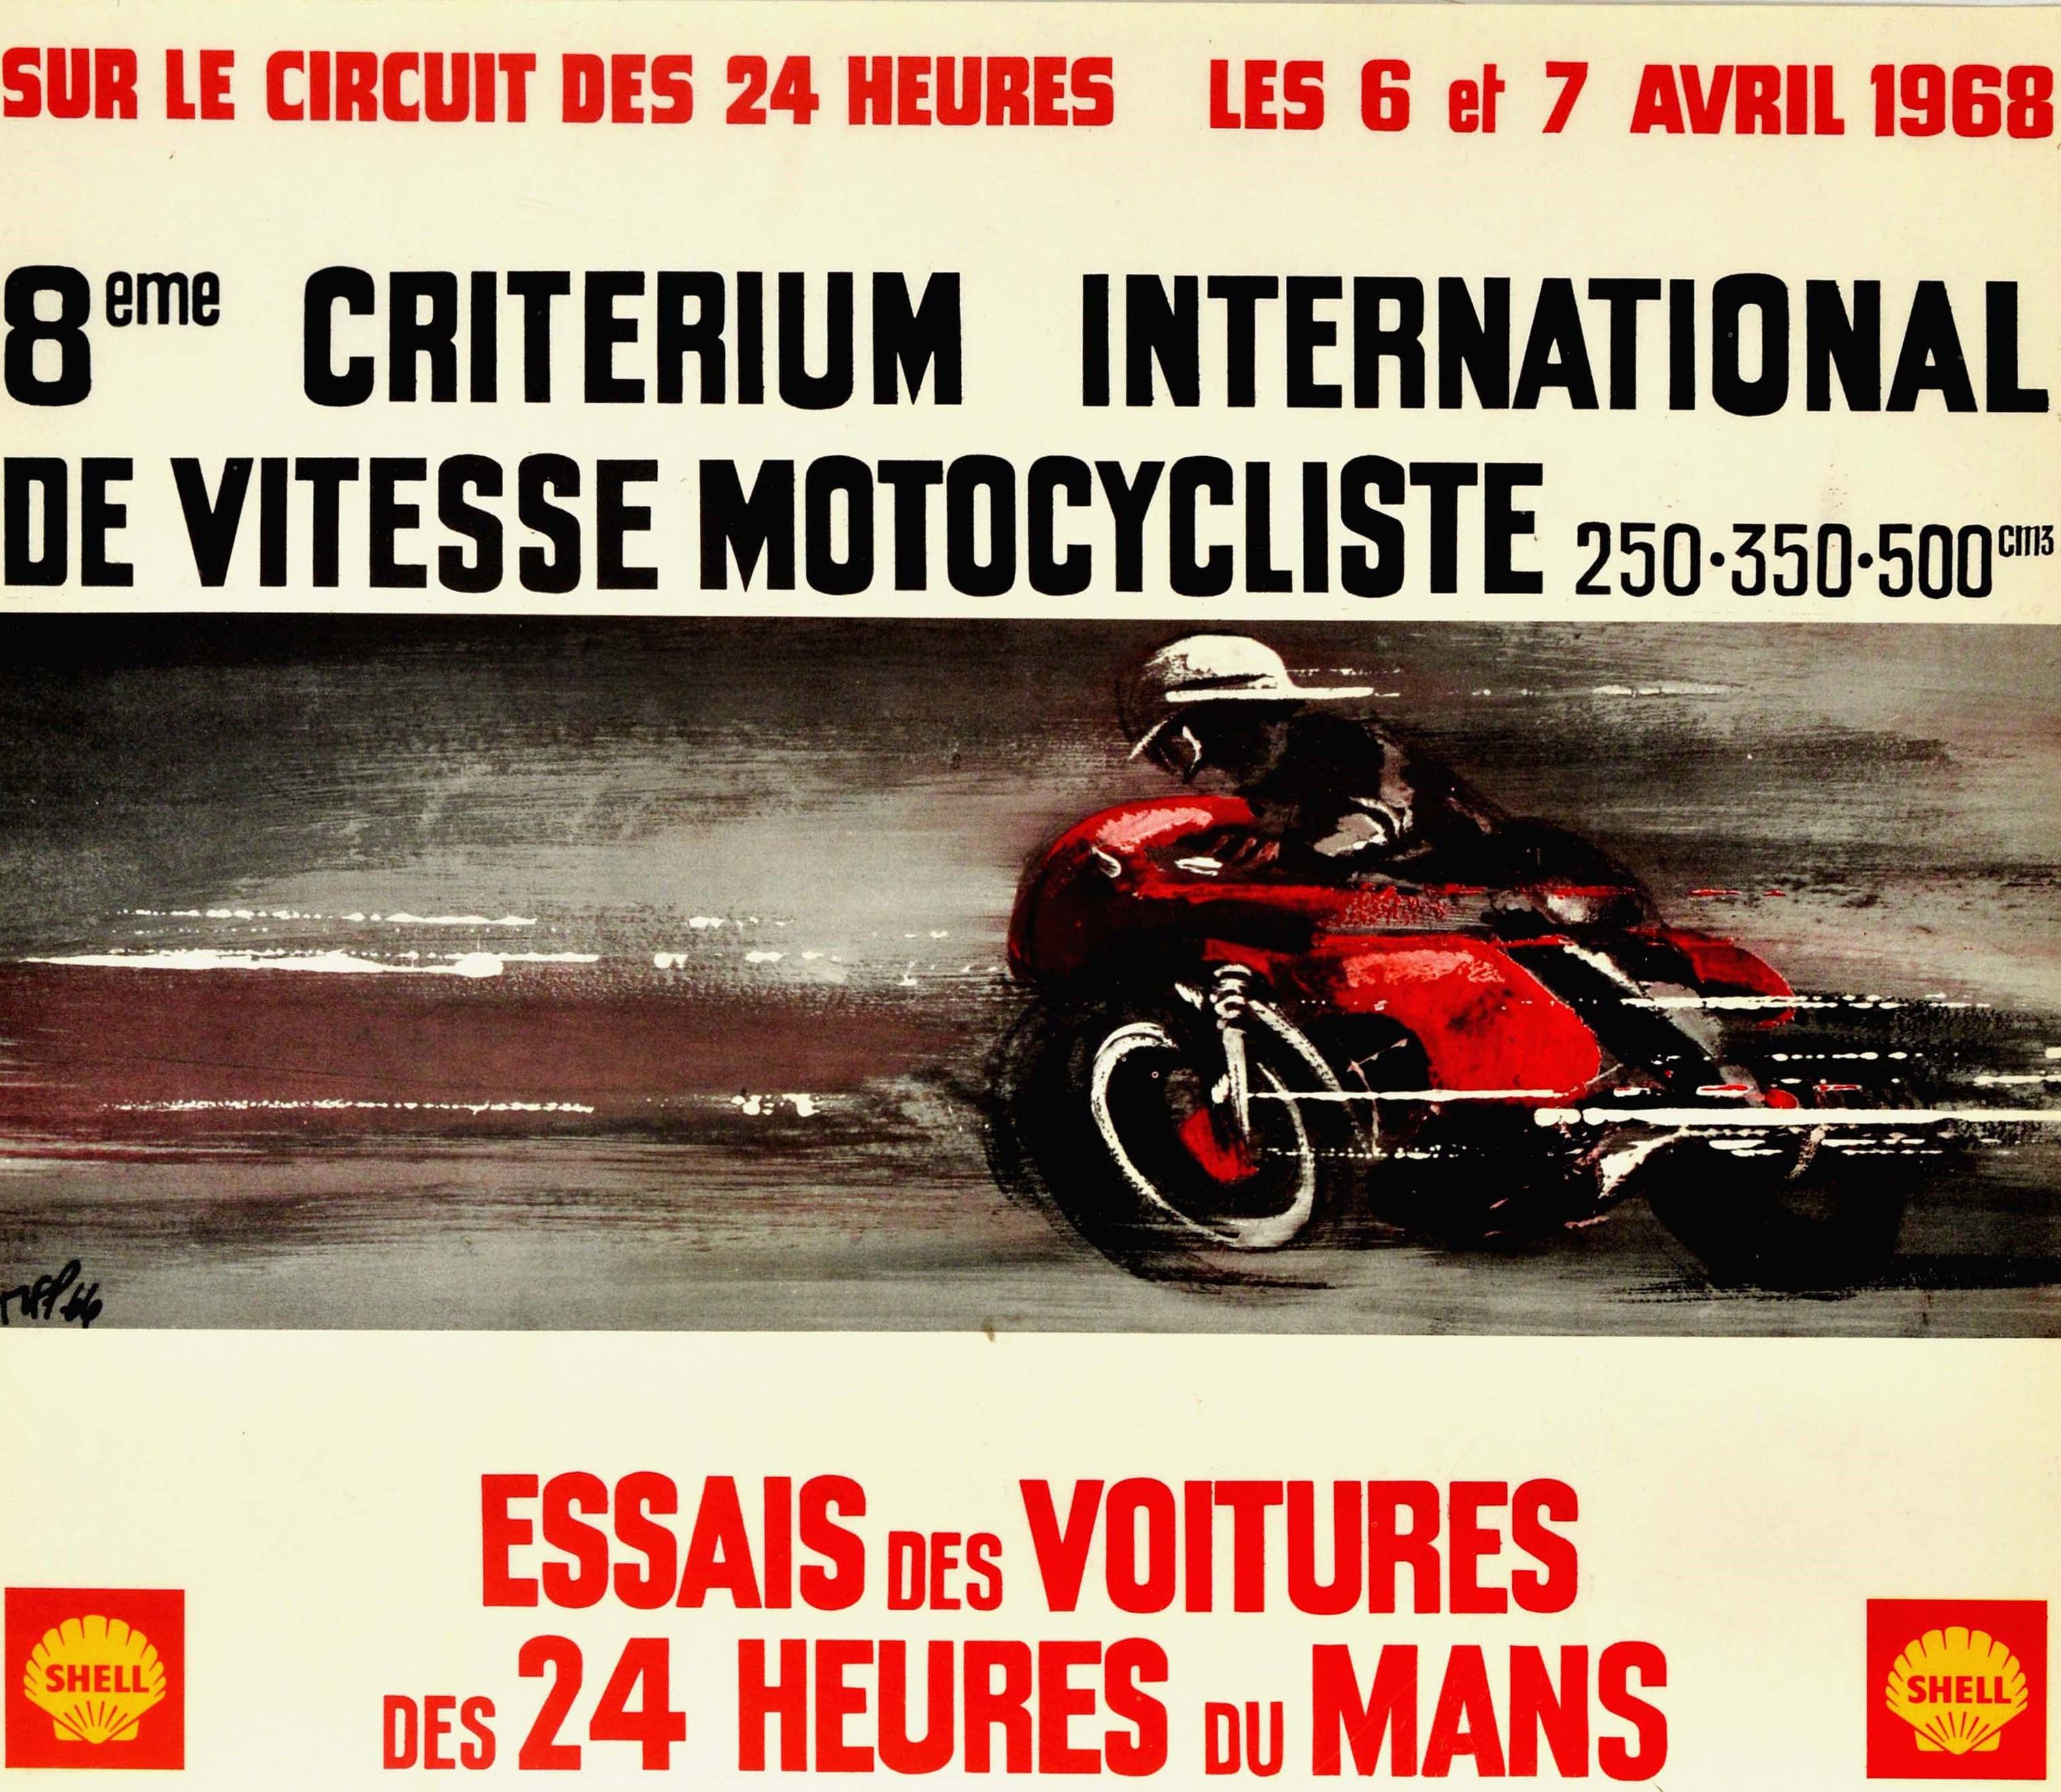 Original Vintage Poster 24 Heures Du Mans 1968 Motorcycle Car Race Le Mans Sport - Print by Unknown